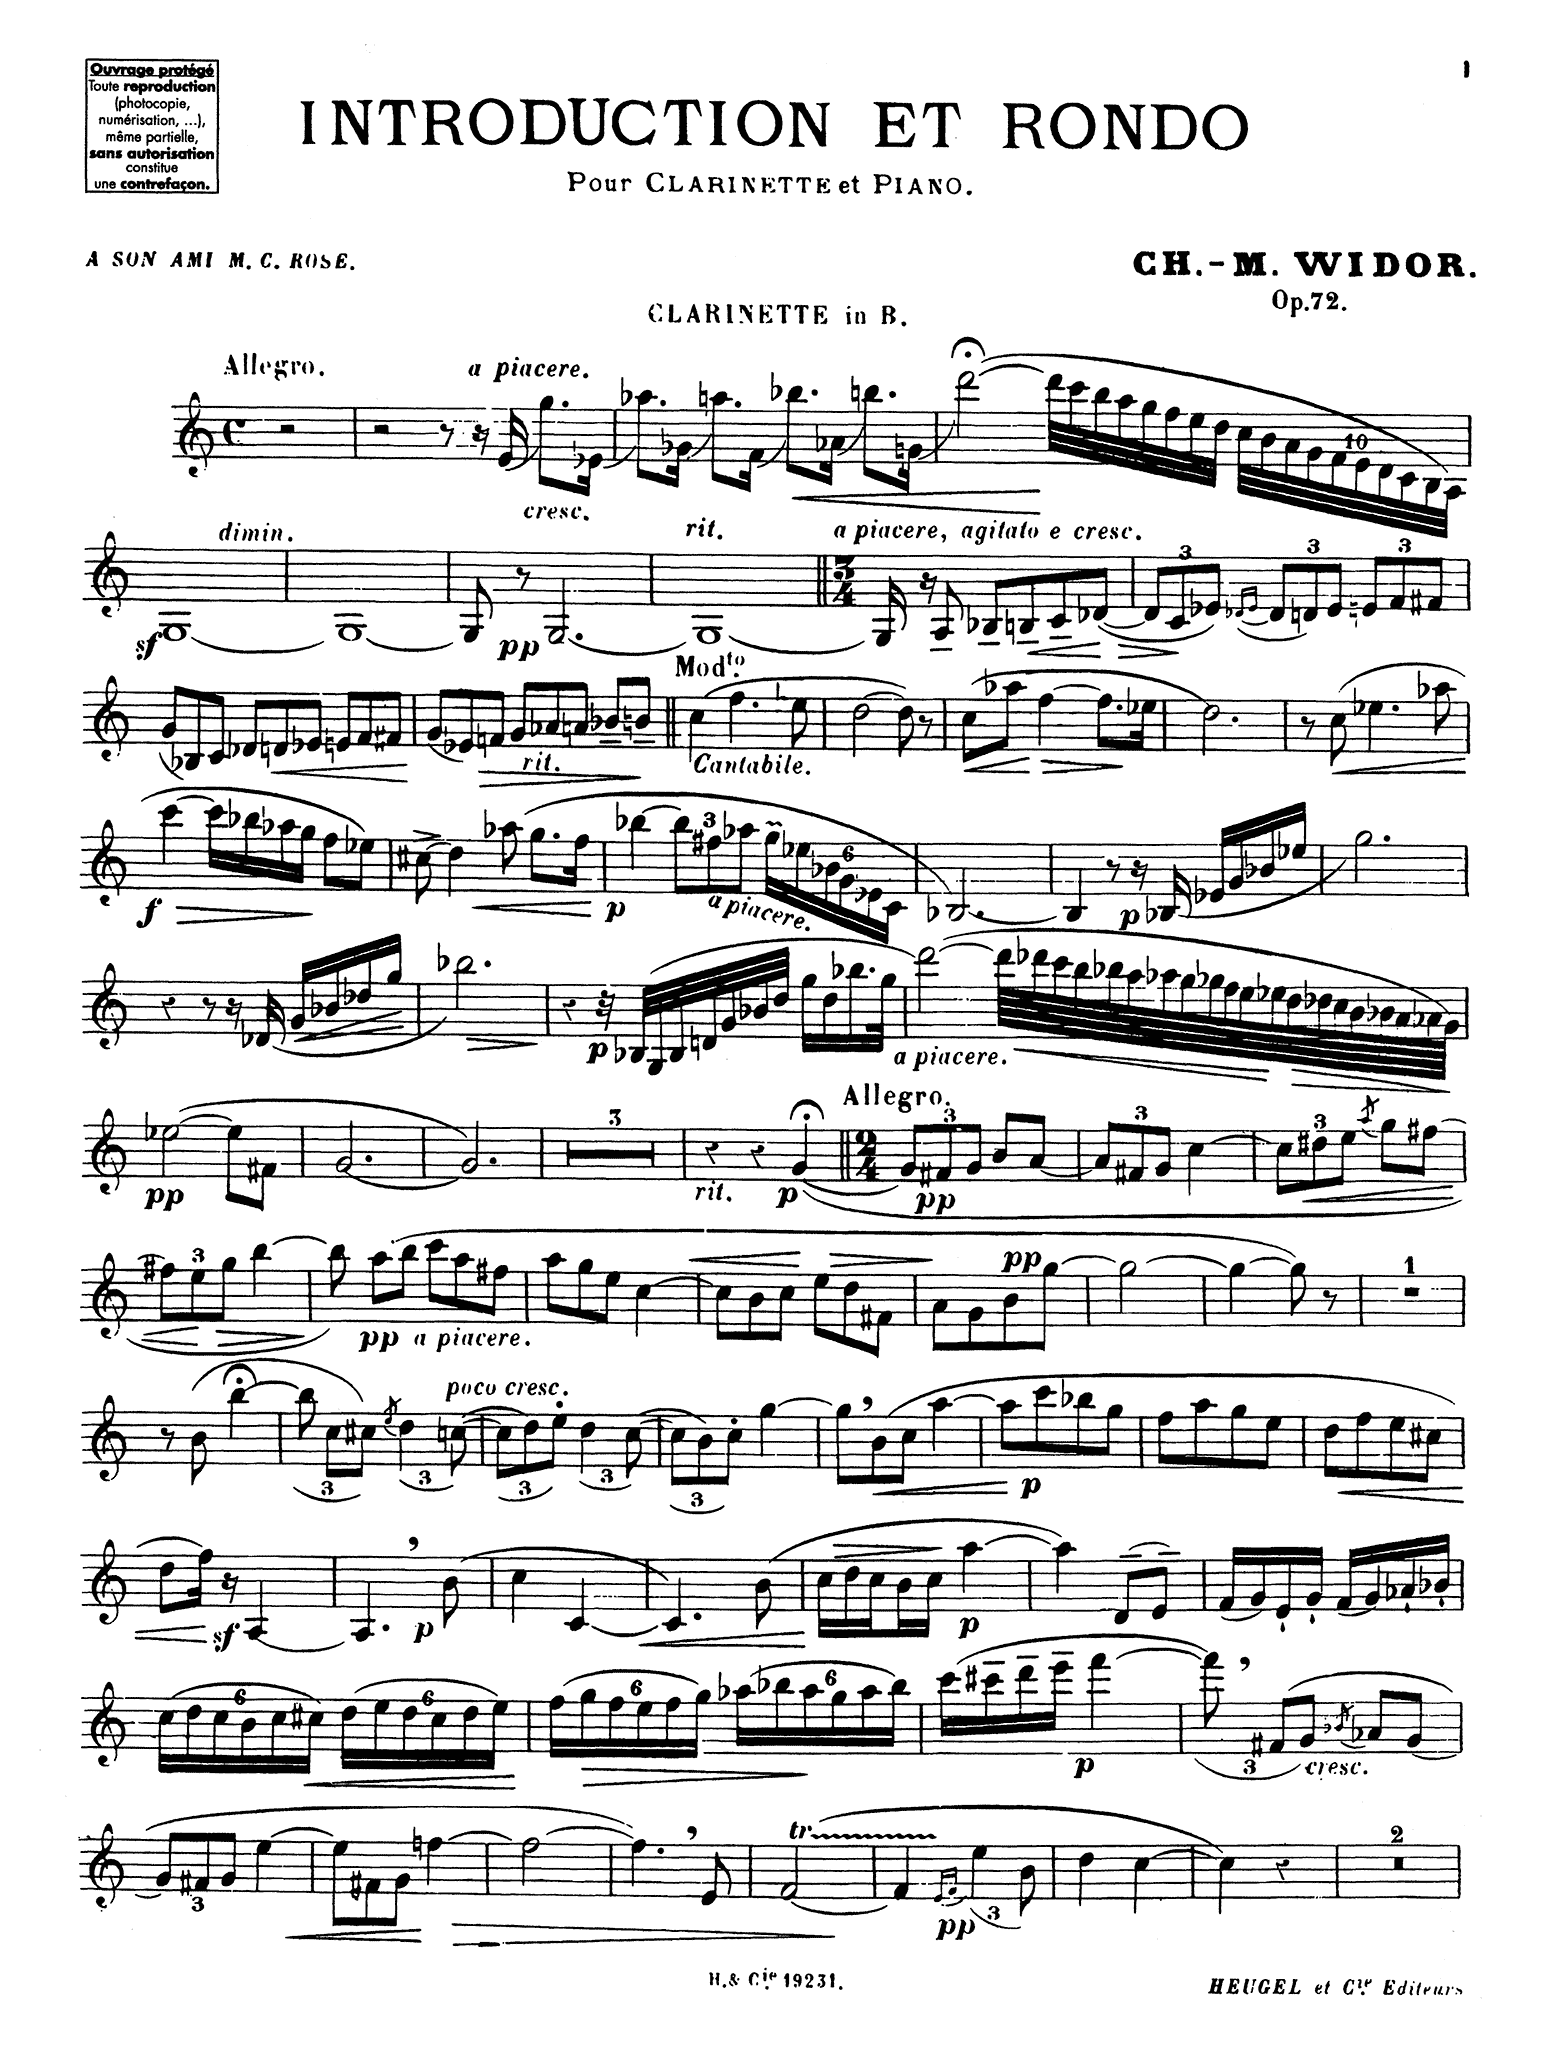 Widor Introduction et rondo, Op. 72 Clarinet part